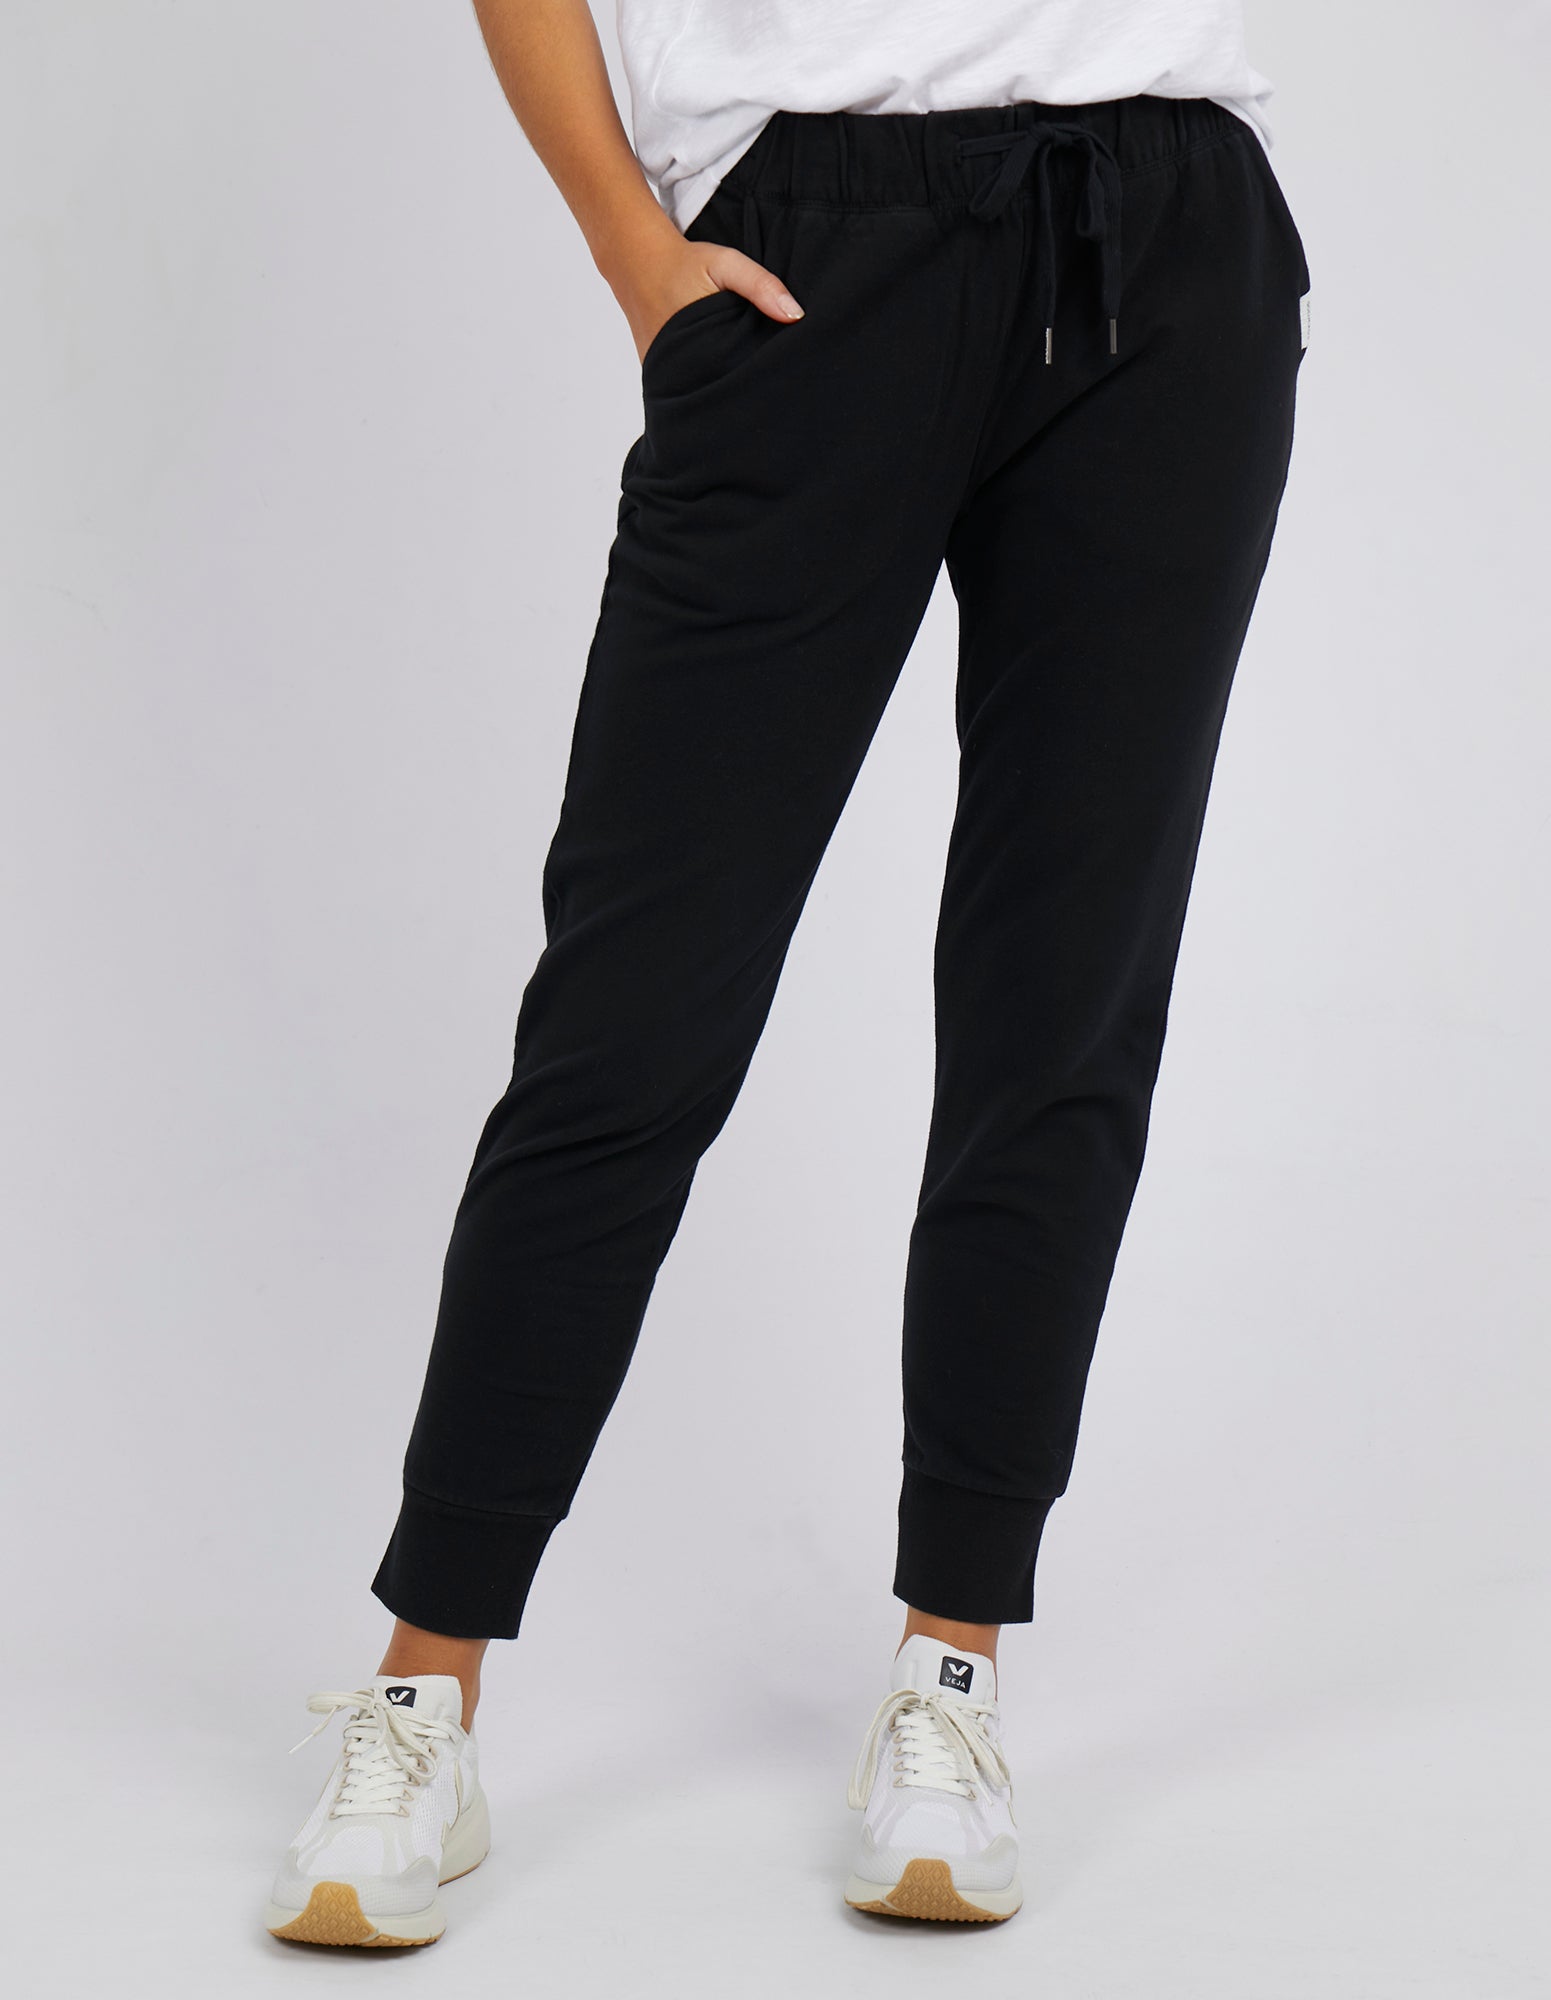 Lazy Days Pant Black | Buy Online | Foxwood Clothing